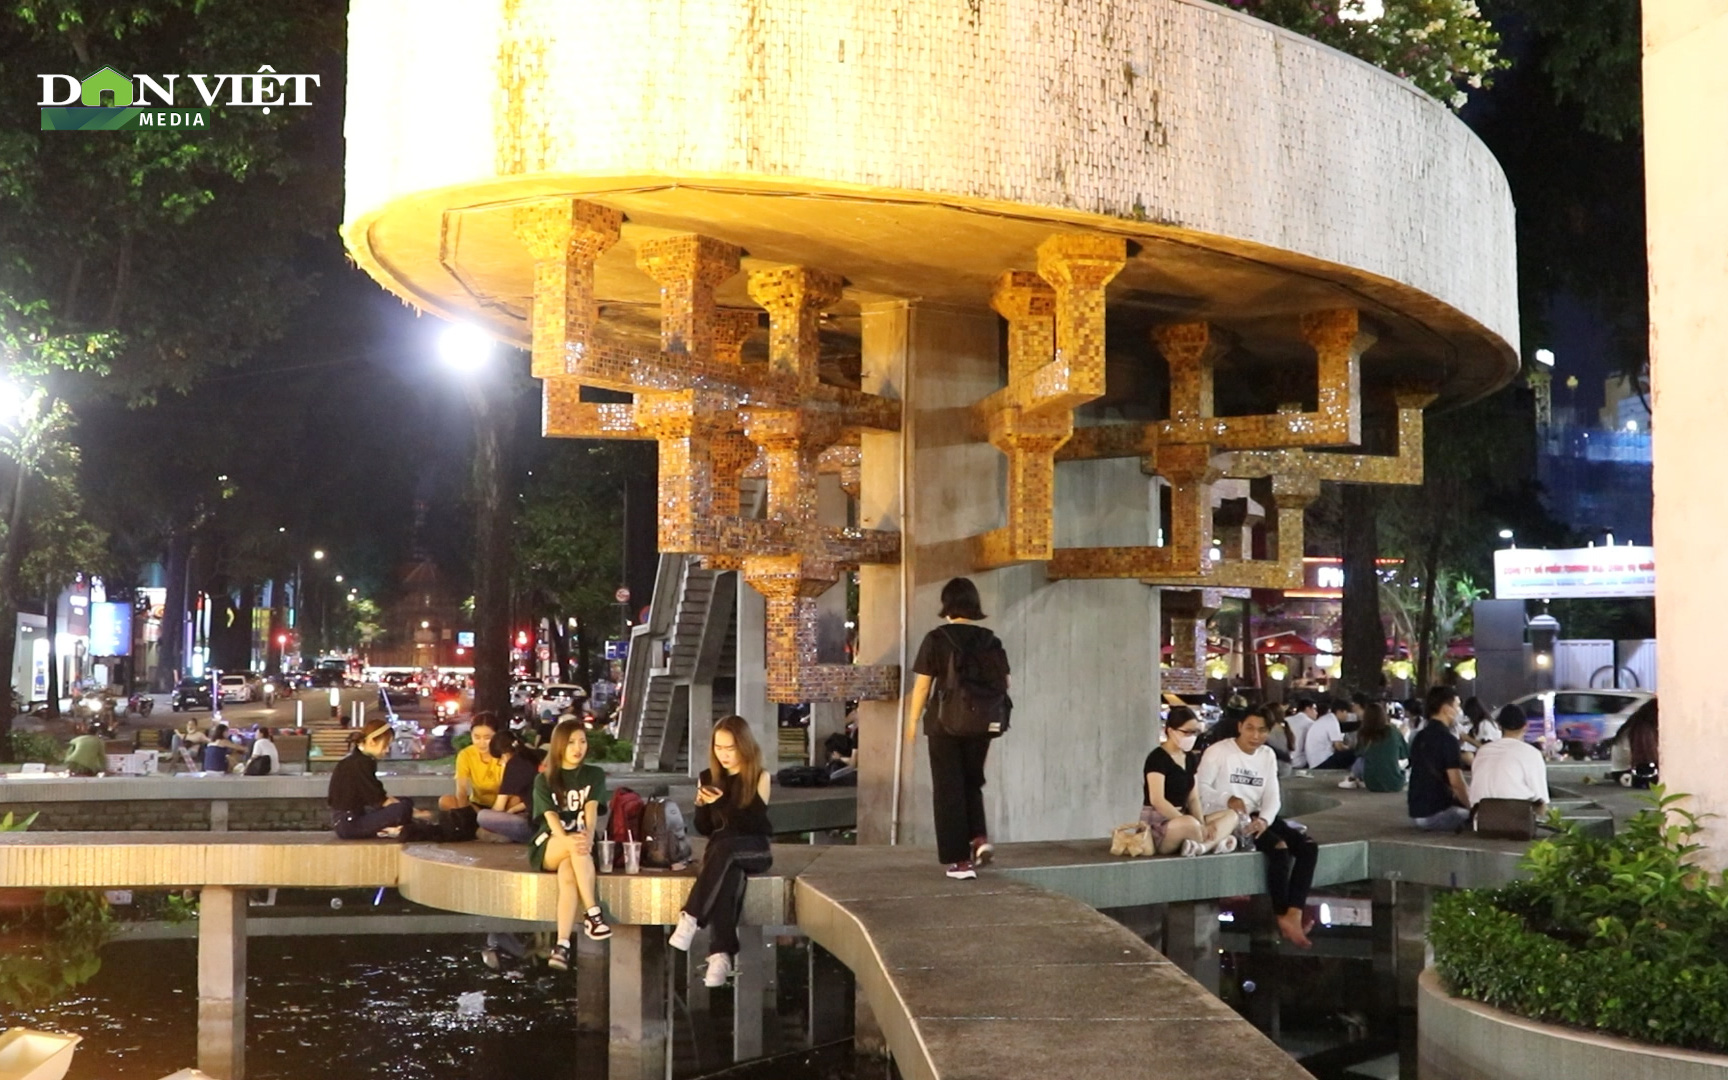 Chưa được cải tạo, Hồ Con Rùa vẫn là địa điểm lý tưởng về đêm của giới trẻ Sài Gòn dịp cuối tuần